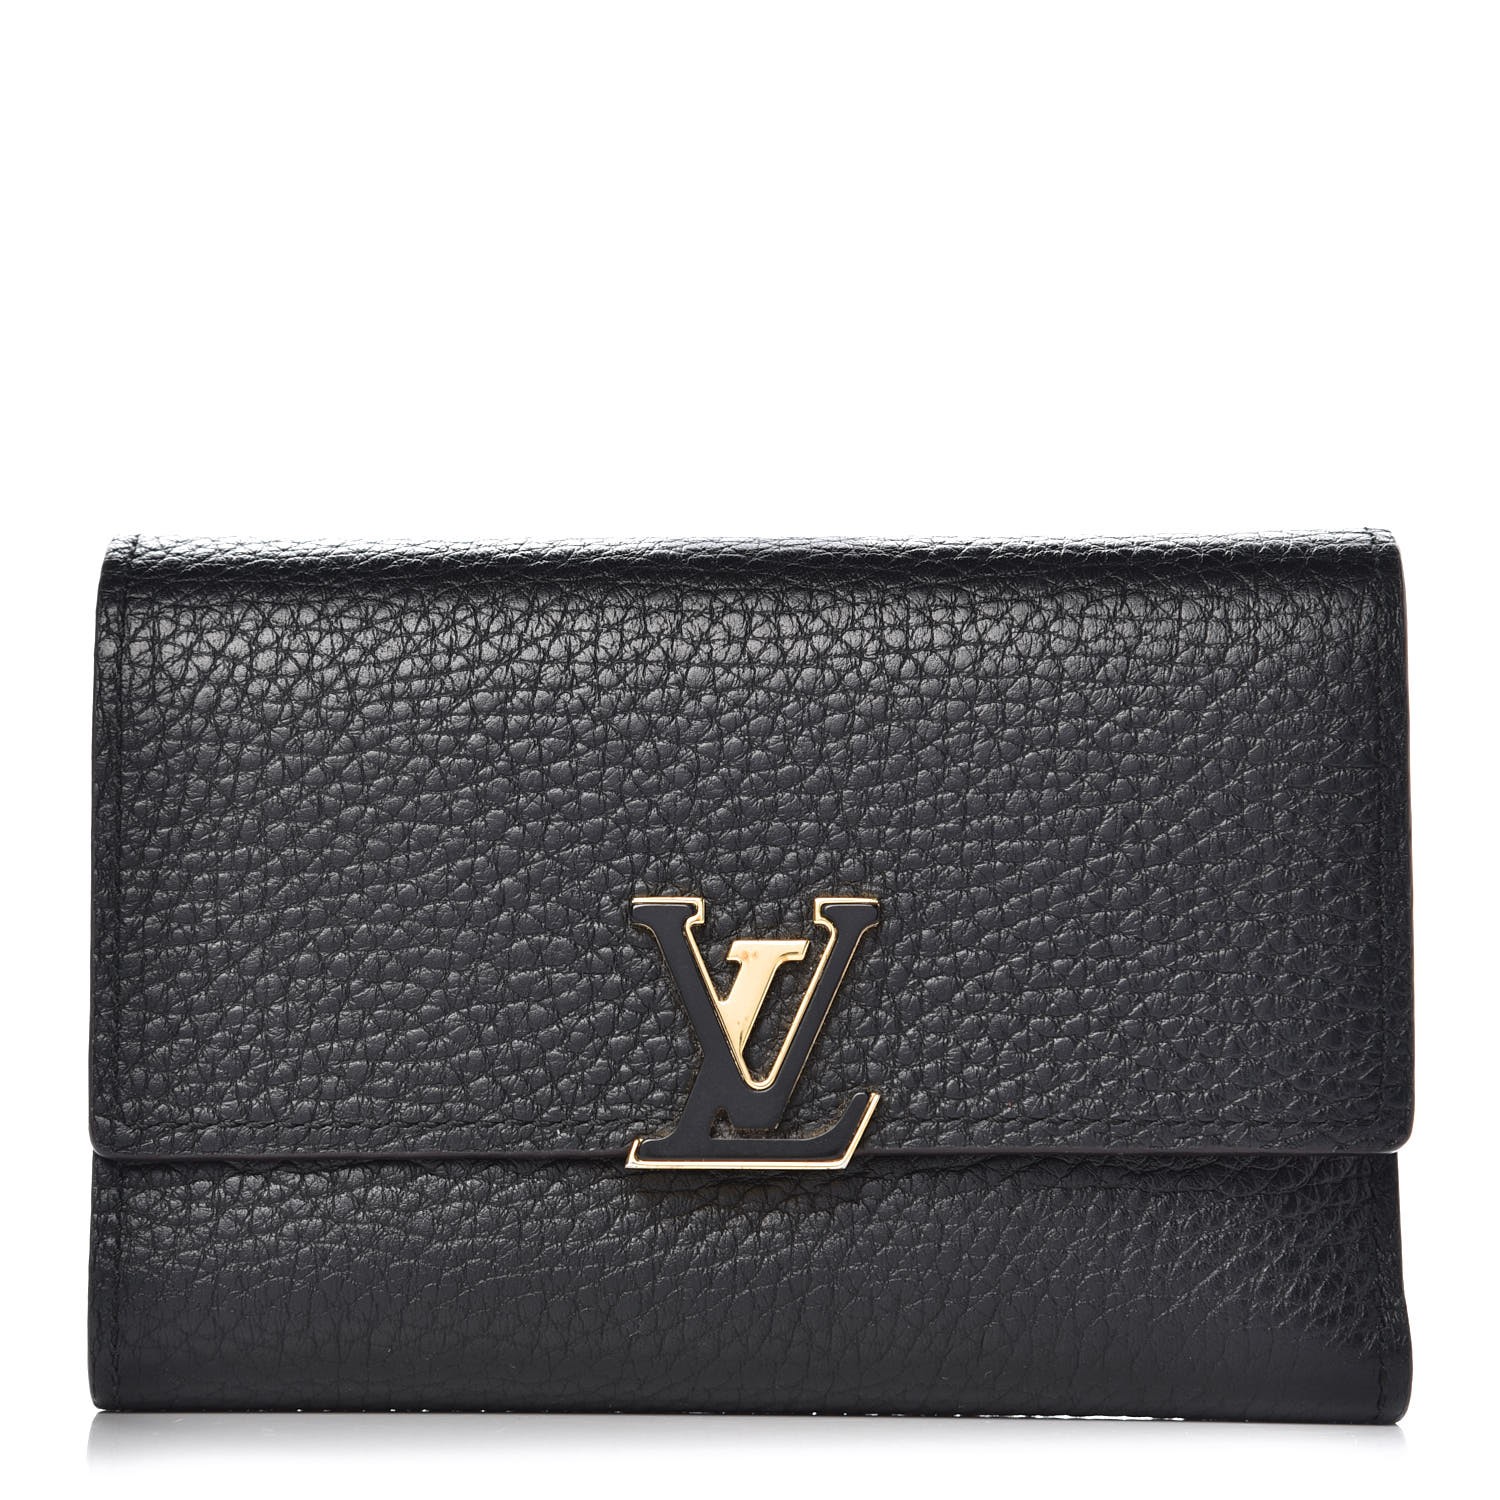 LOUIS VUITTON Taurillon Capucines Compact Wallet Black 346028